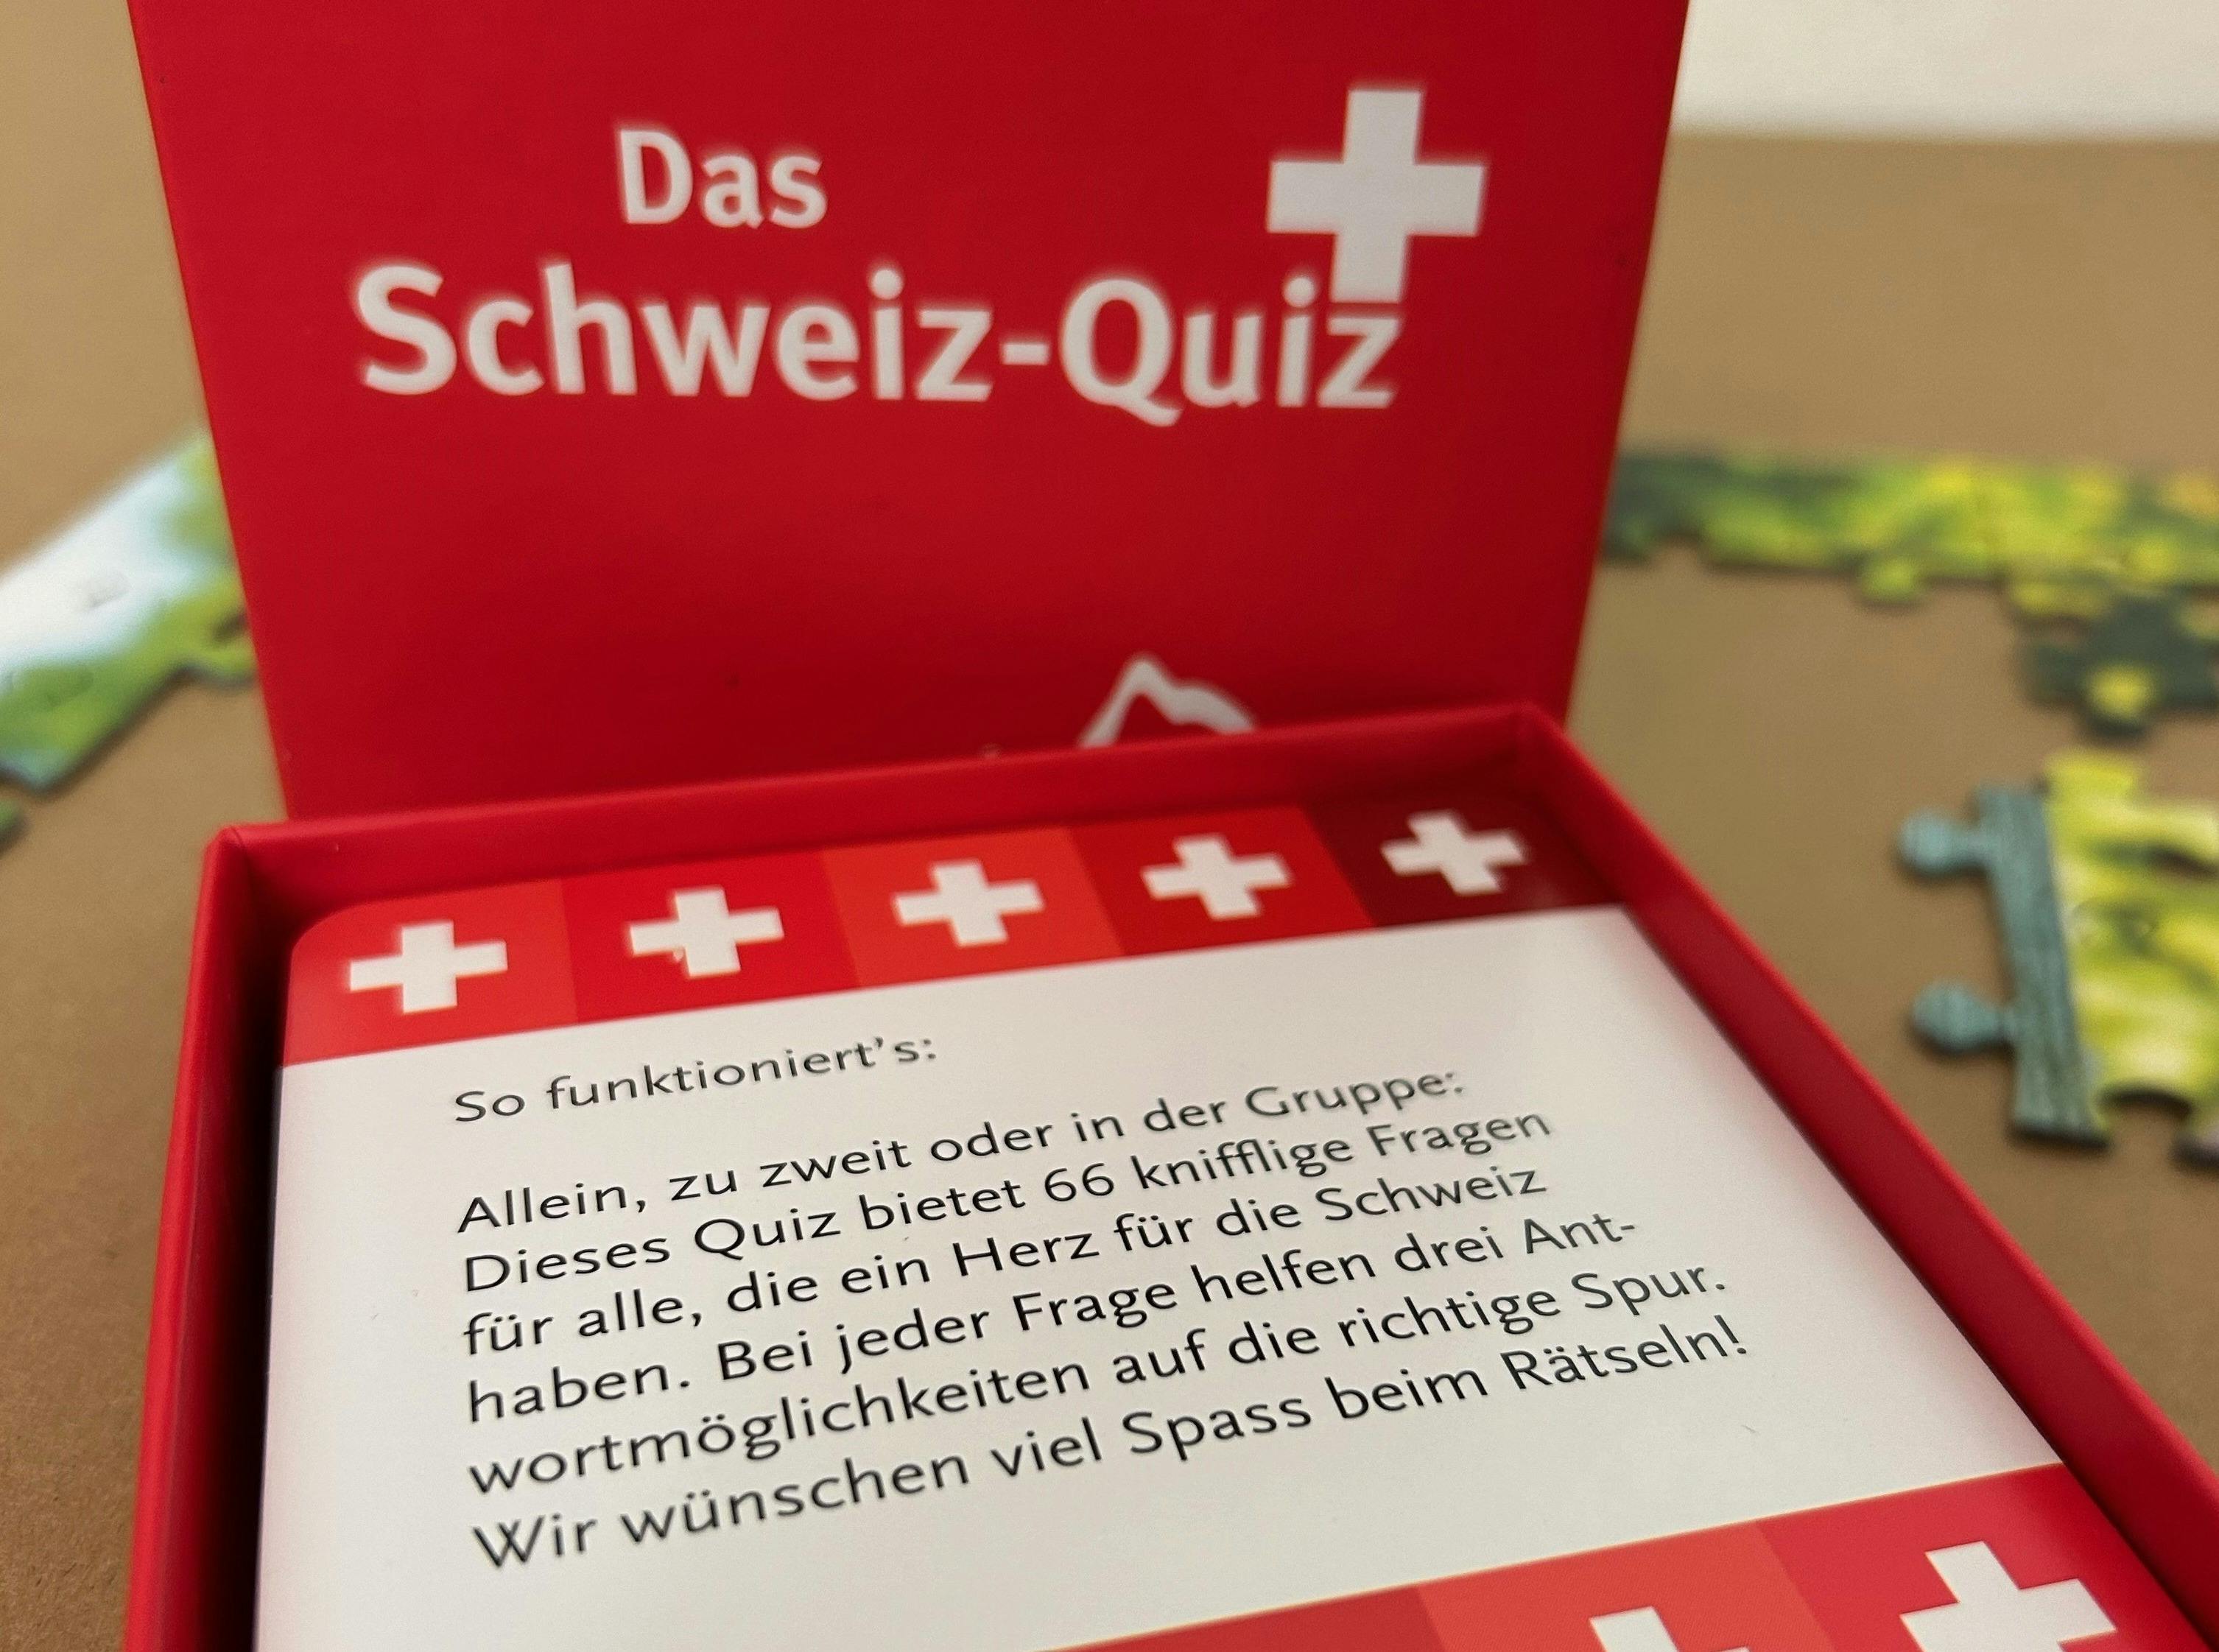 Spielkartenbox des "Schweiz-Quiz" mit Anleitung und Schweizer Kreuzen.